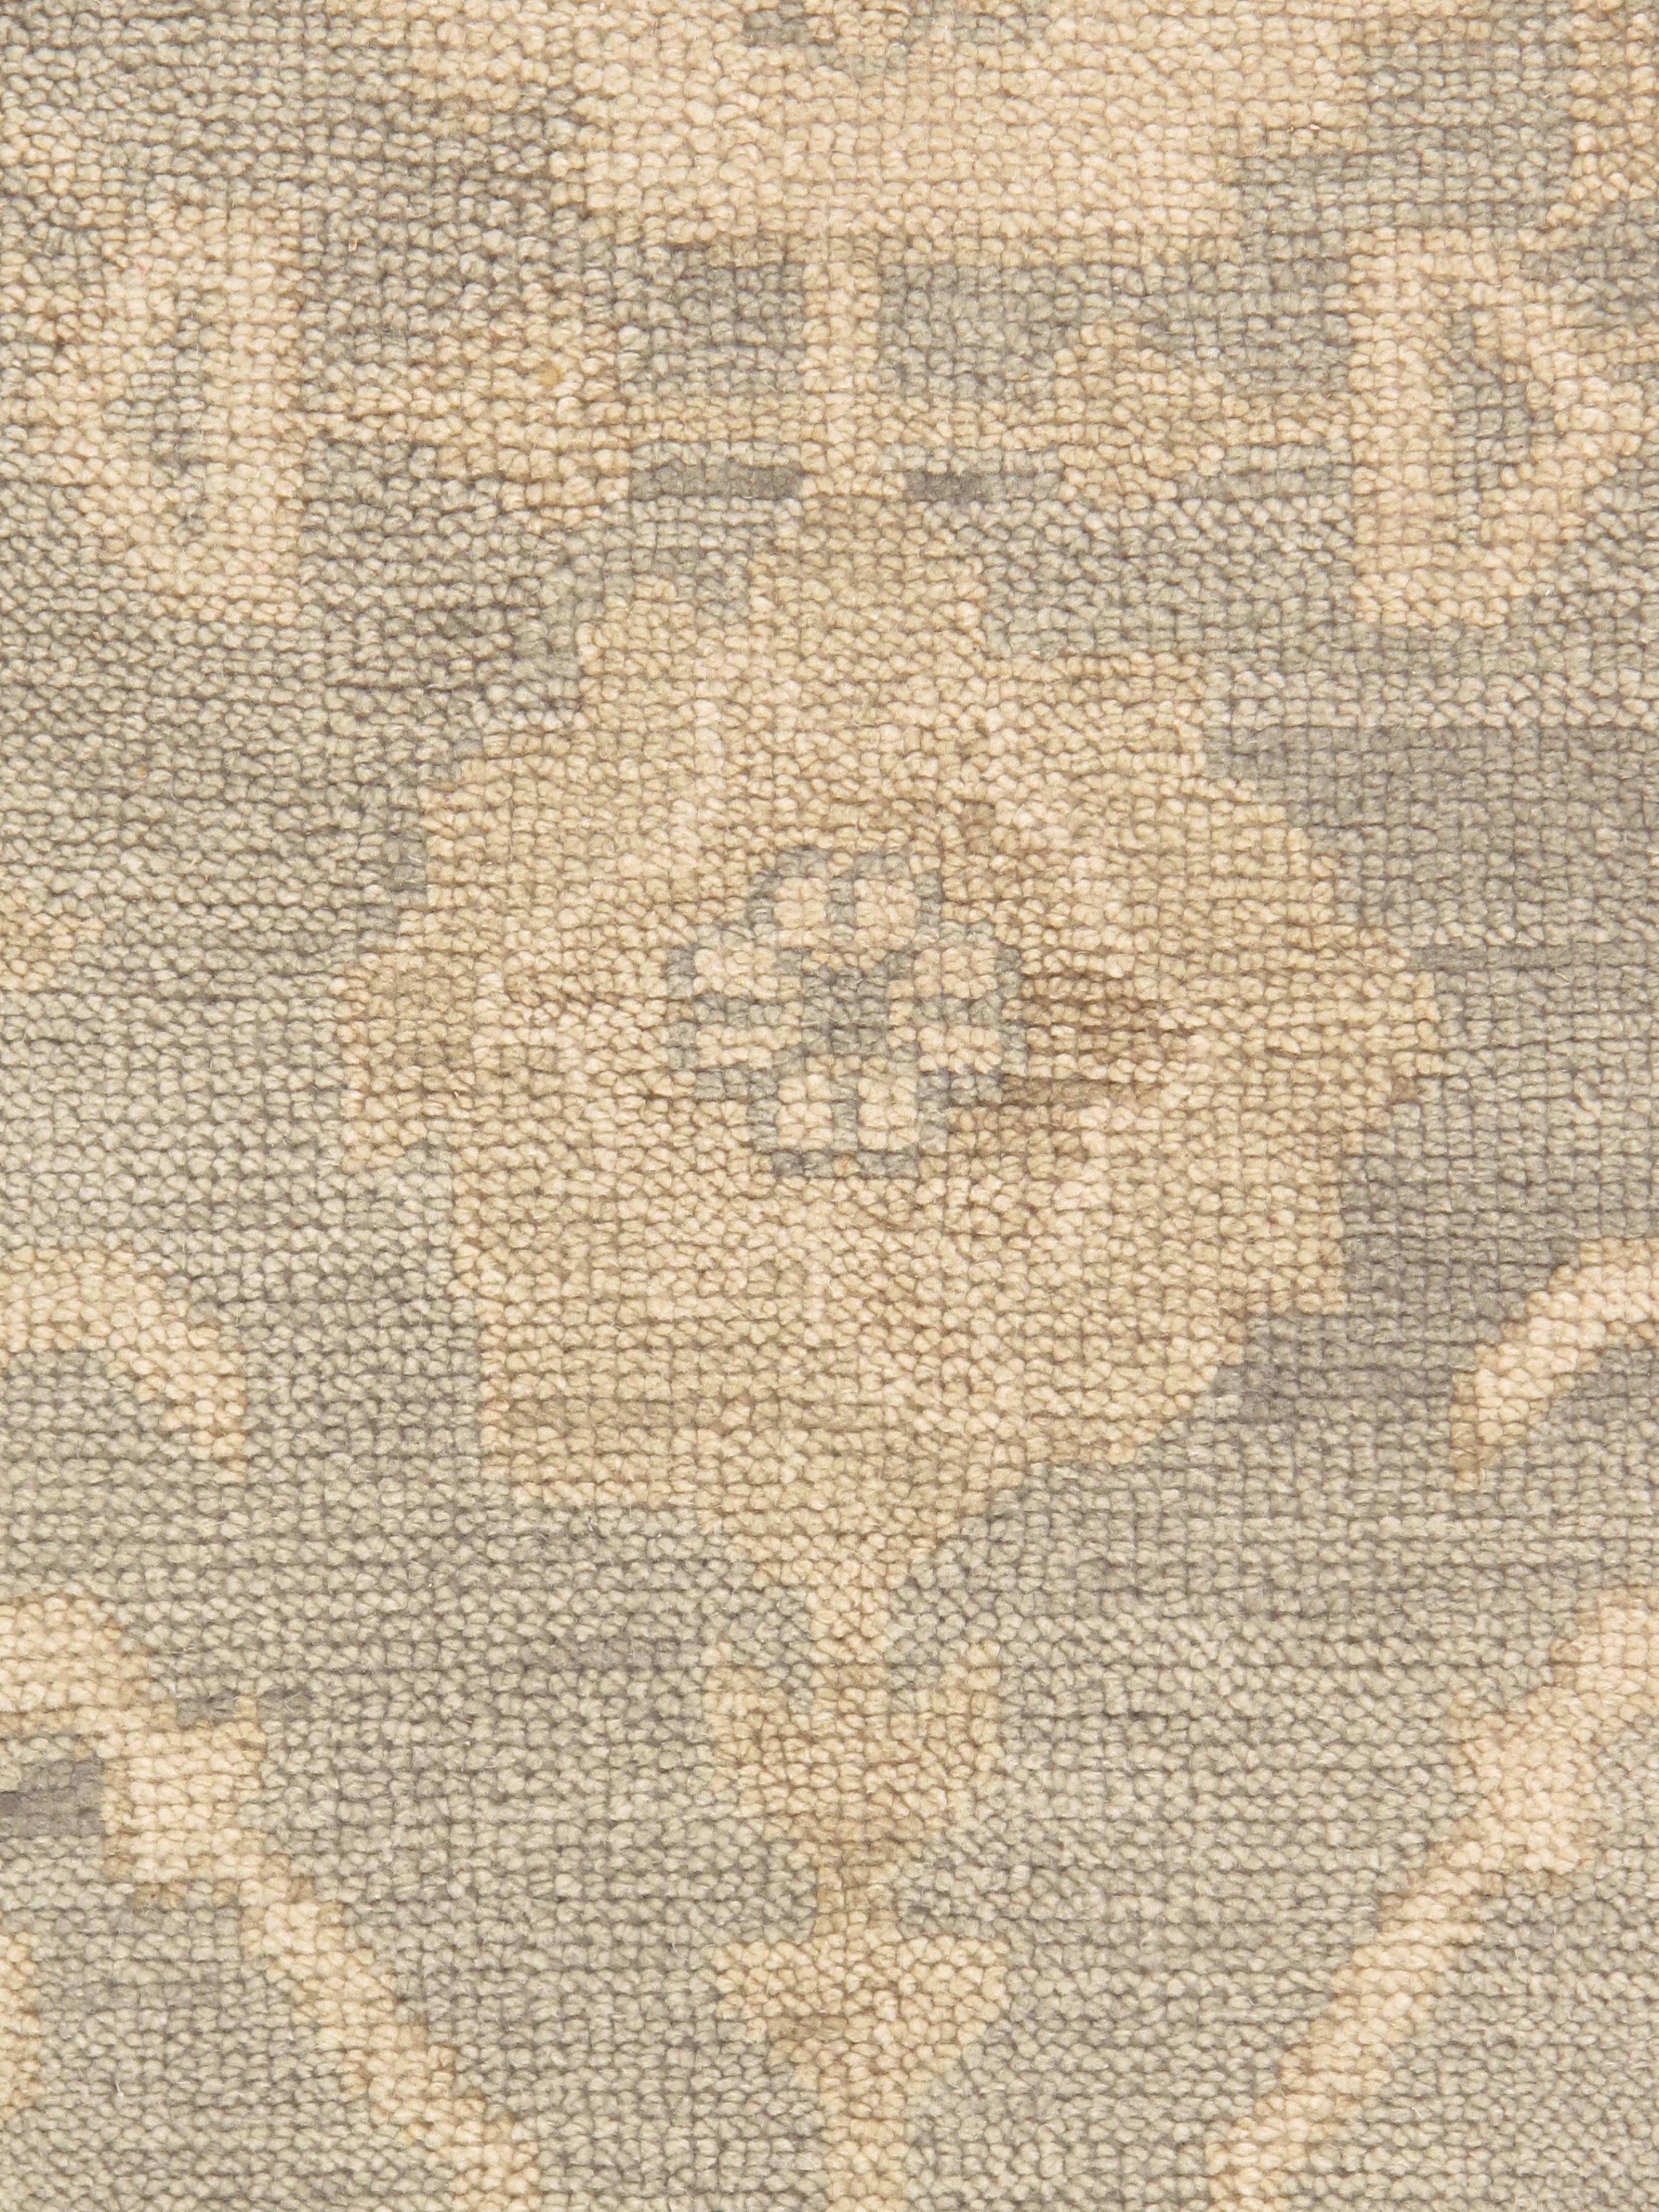 Oushak-Teppiche, auch als Ushak- oder Usak-Teppiche bekannt, sind für ihre zeitlose Schönheit, ihre reiche Geschichte und ihre außergewöhnliche Handwerkskunst bekannt. Diese Teppiche stammen aus der Region Oushak in der Westtürkei und werden seit